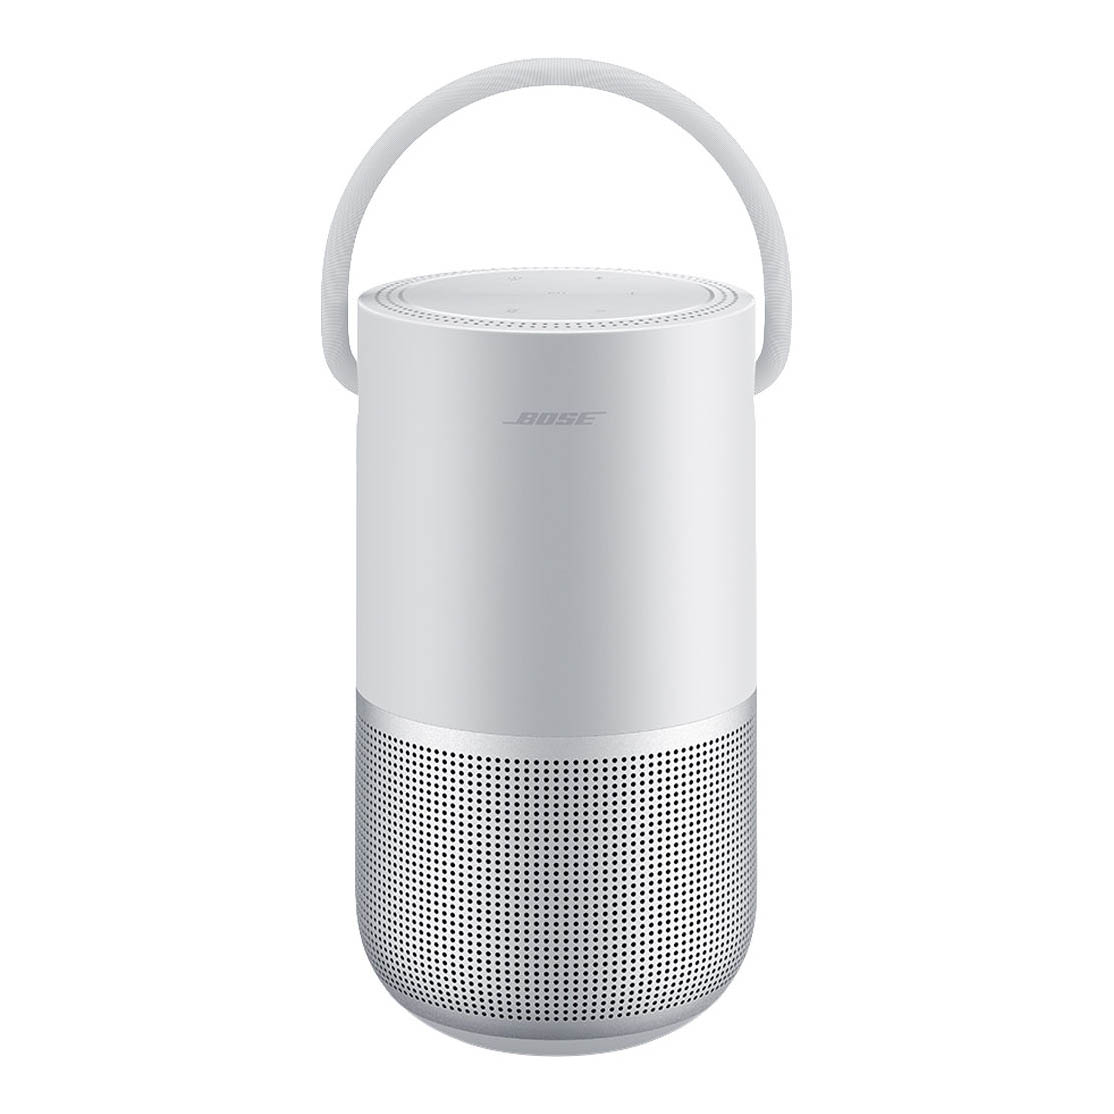 Умная колонка Bose Portable Home Speaker, серебристый беспроводной проектор с wi fi и поддержкой alexa и google home assistant